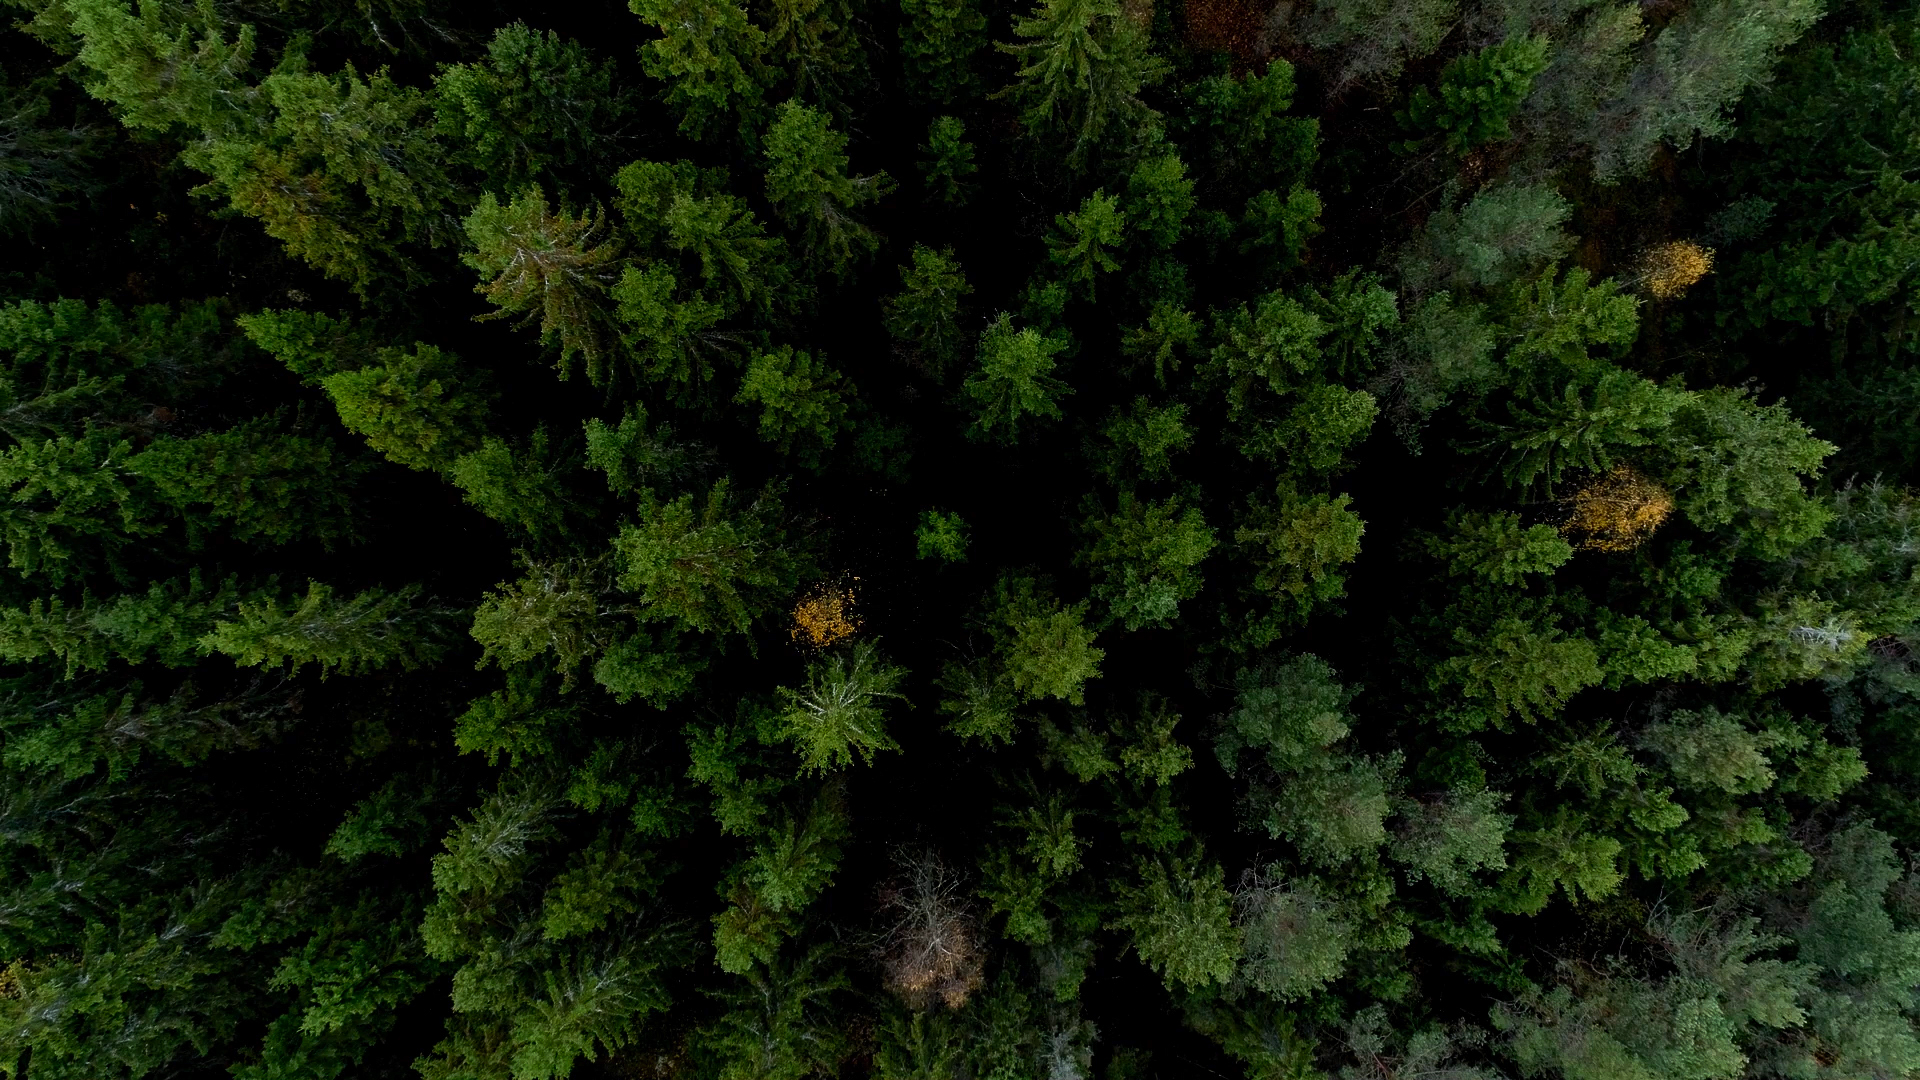 Assessing forest health_image 3.jpg